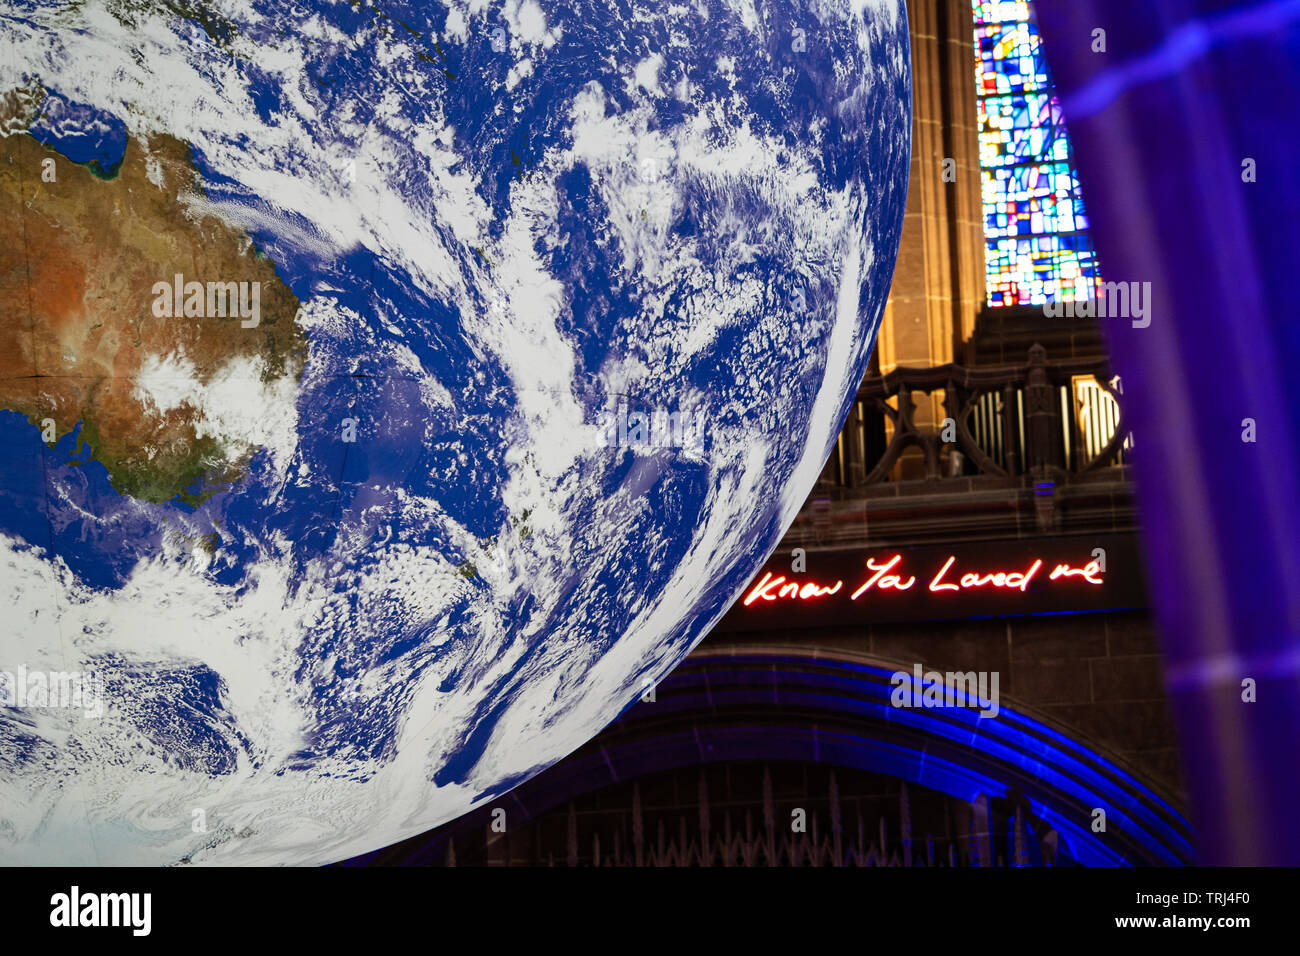 Gaia, 23 ft Replik der Erde, nach Künstler Luke Jerram, in der Kathedrale von Liverpool, Liverpool, UK angezeigt. Leuchtreklame sagt: "Wissen Sie, der mich liebte' Stockfoto